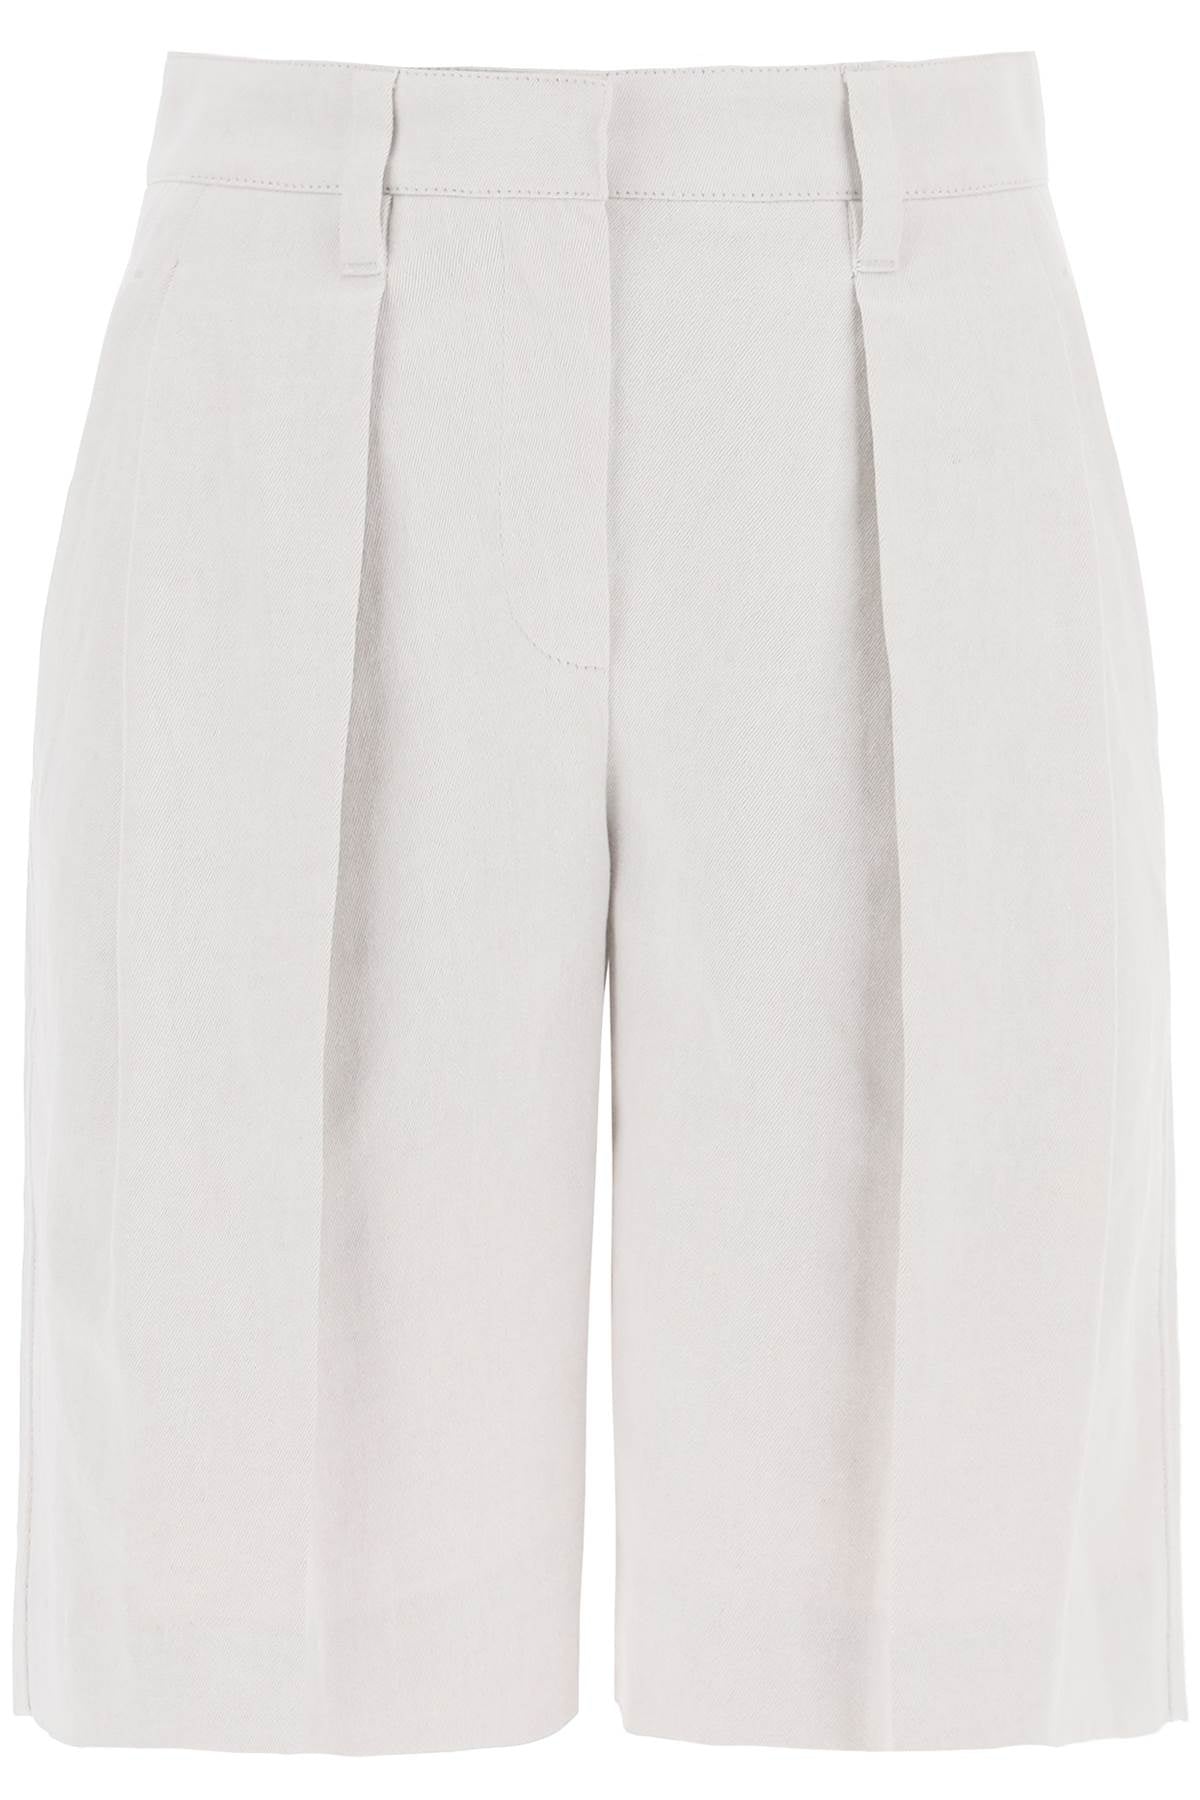 Cotton-Linen Box Pleat Shorts for Women